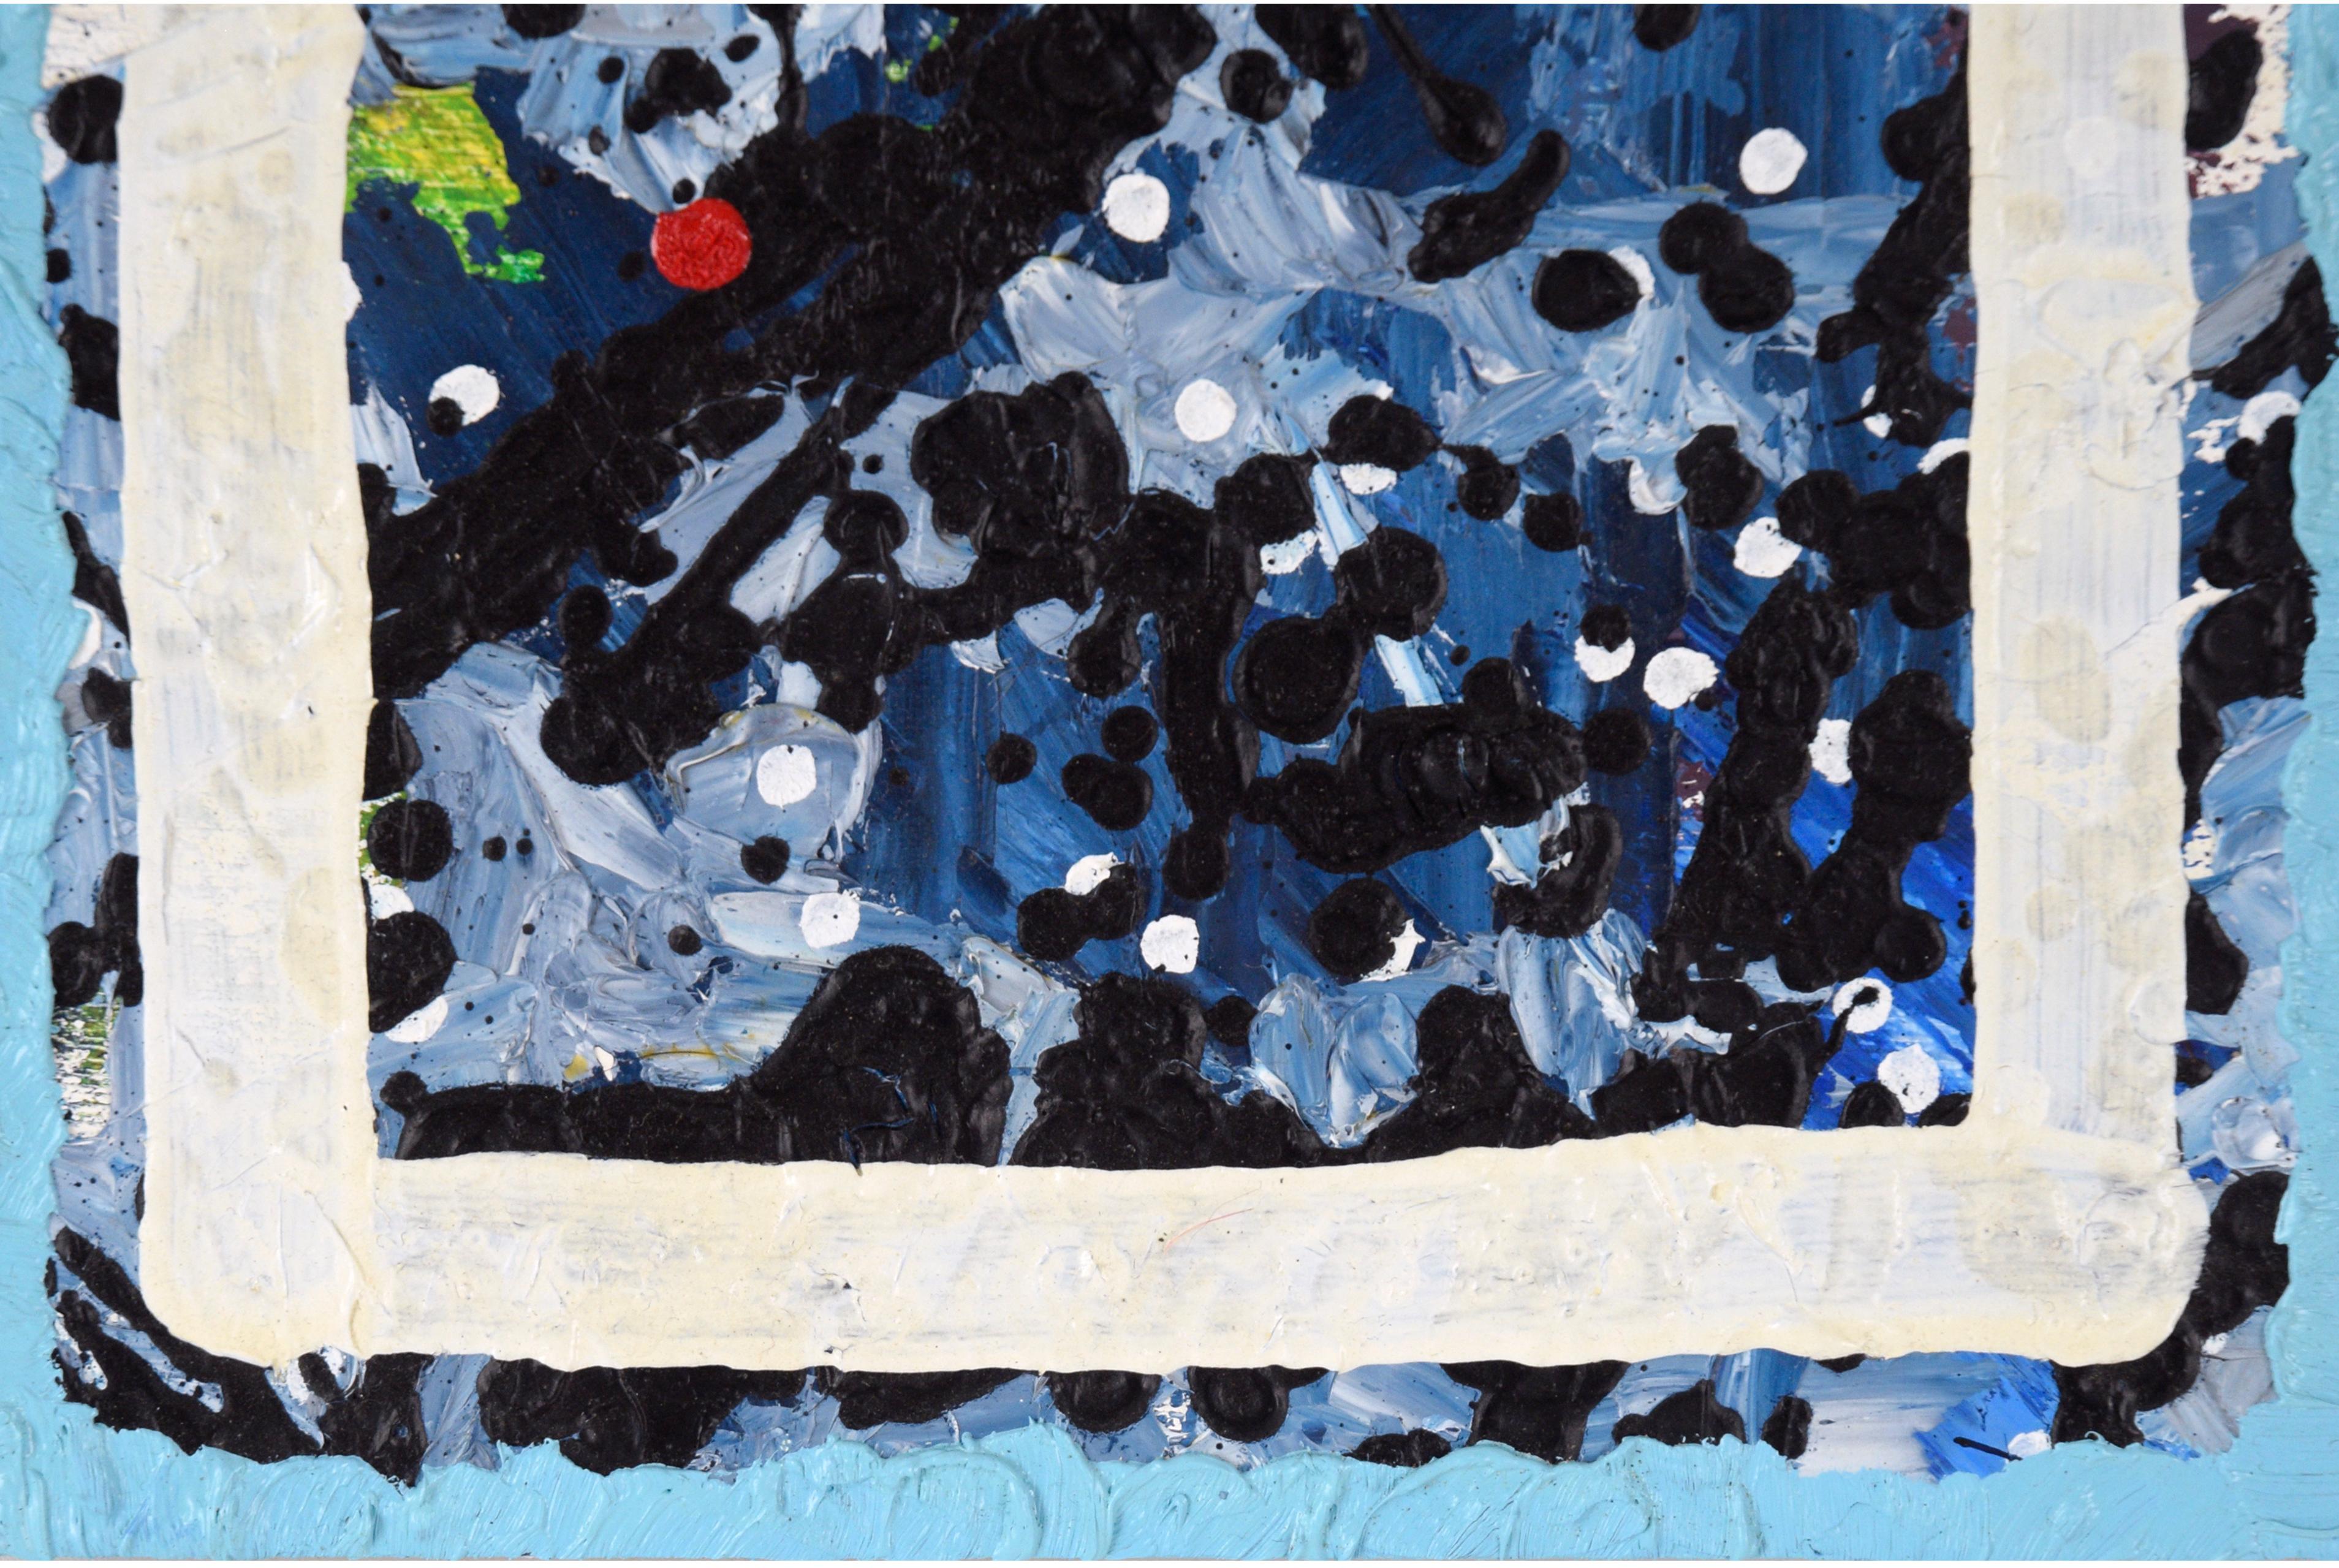 « Le rouge est une distraction » - Composition abstraite à l'huile sur panneau de bois froissé

Composition abstraite richement texturée de l'artiste californien Devon Brockopp-Hammer (américain, né en 1986). Des couches de peinture sont accumulées